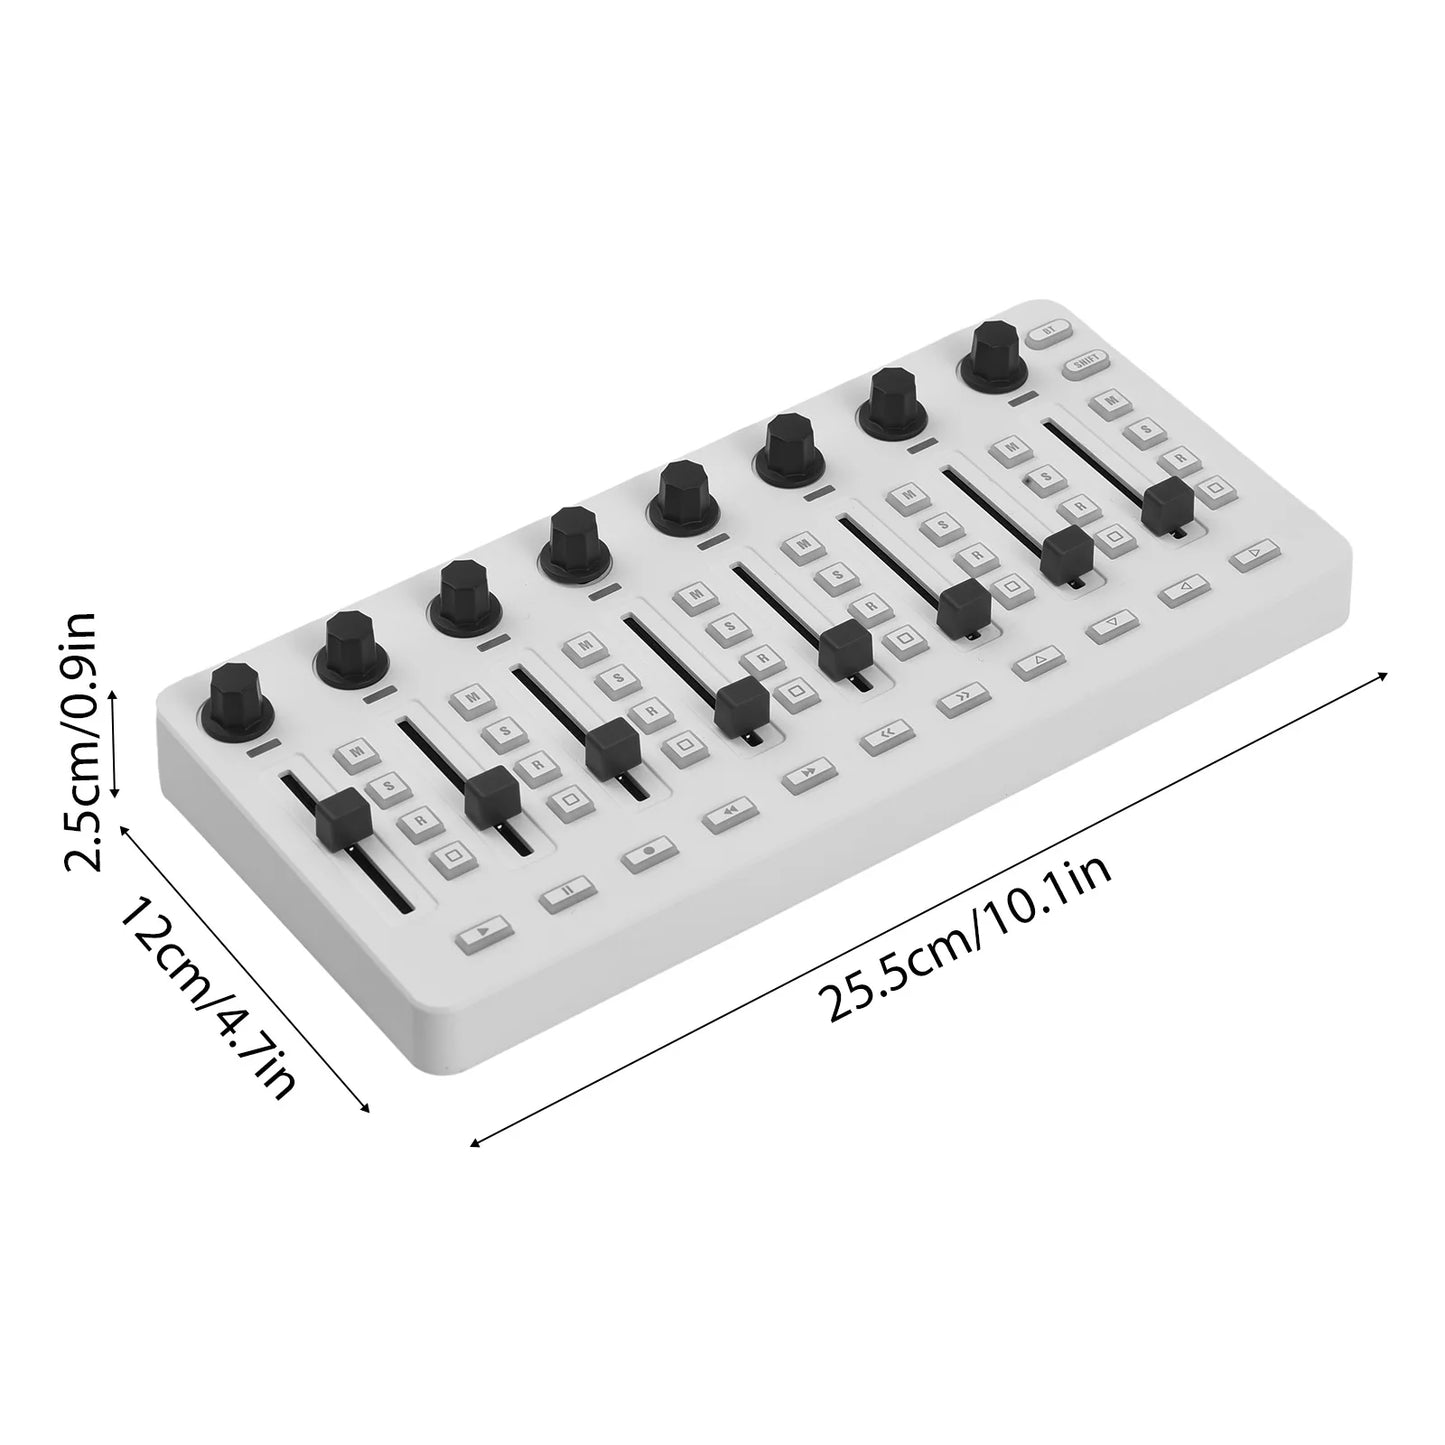 MIDI Controller MIDI Mixing Console BT